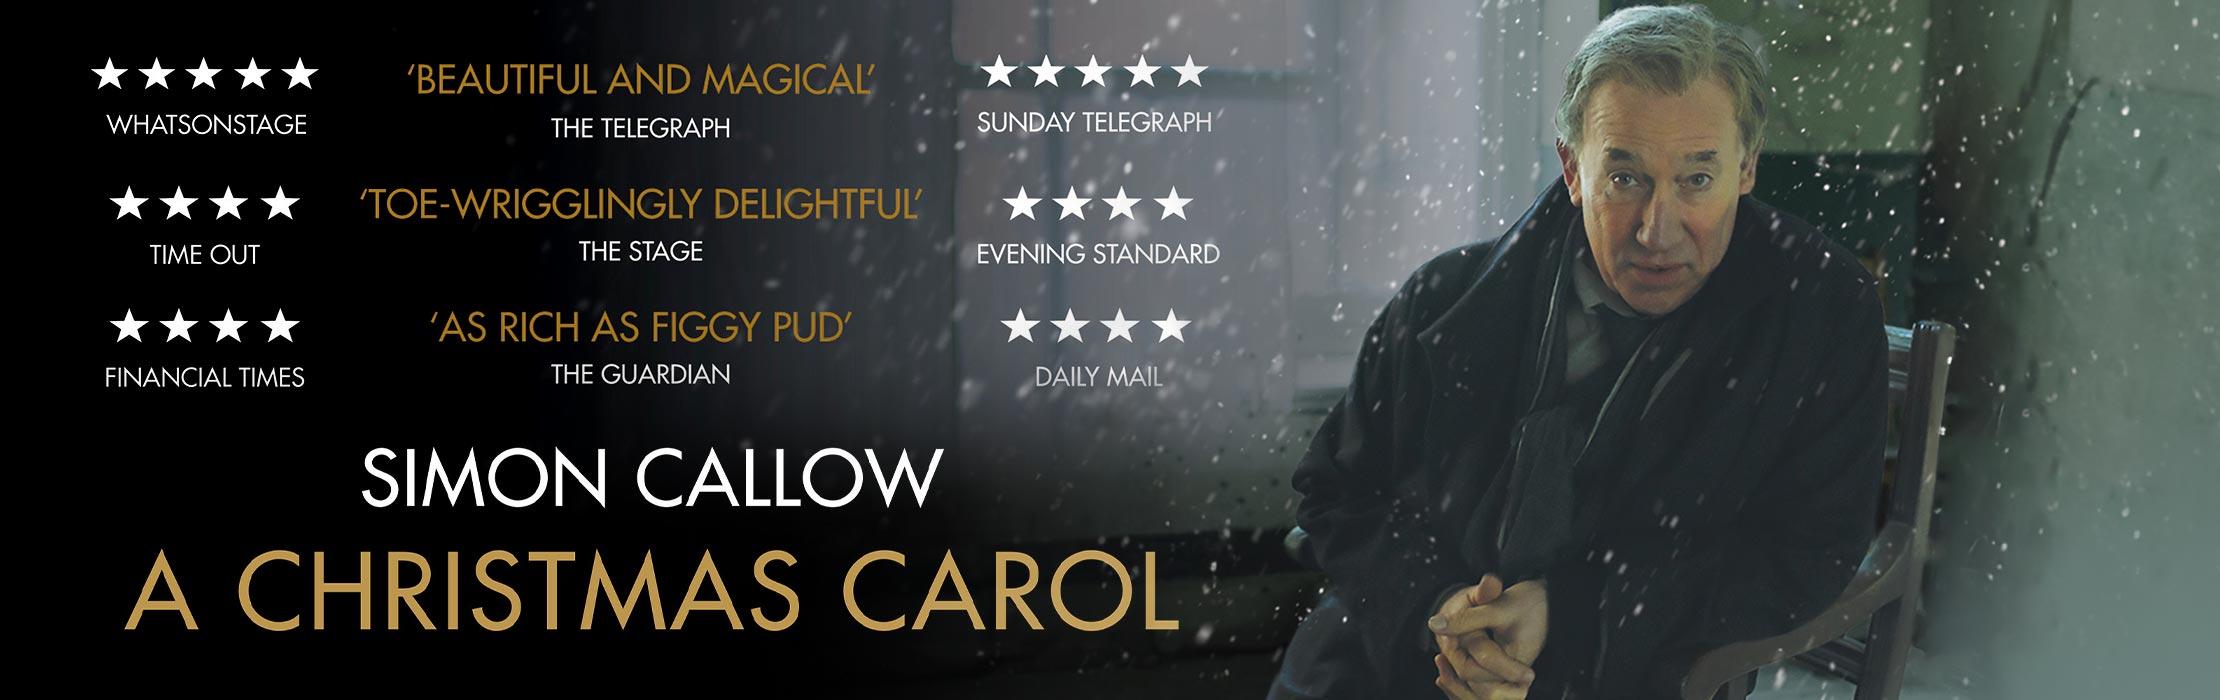 A Christmas Carol With Simon Callow